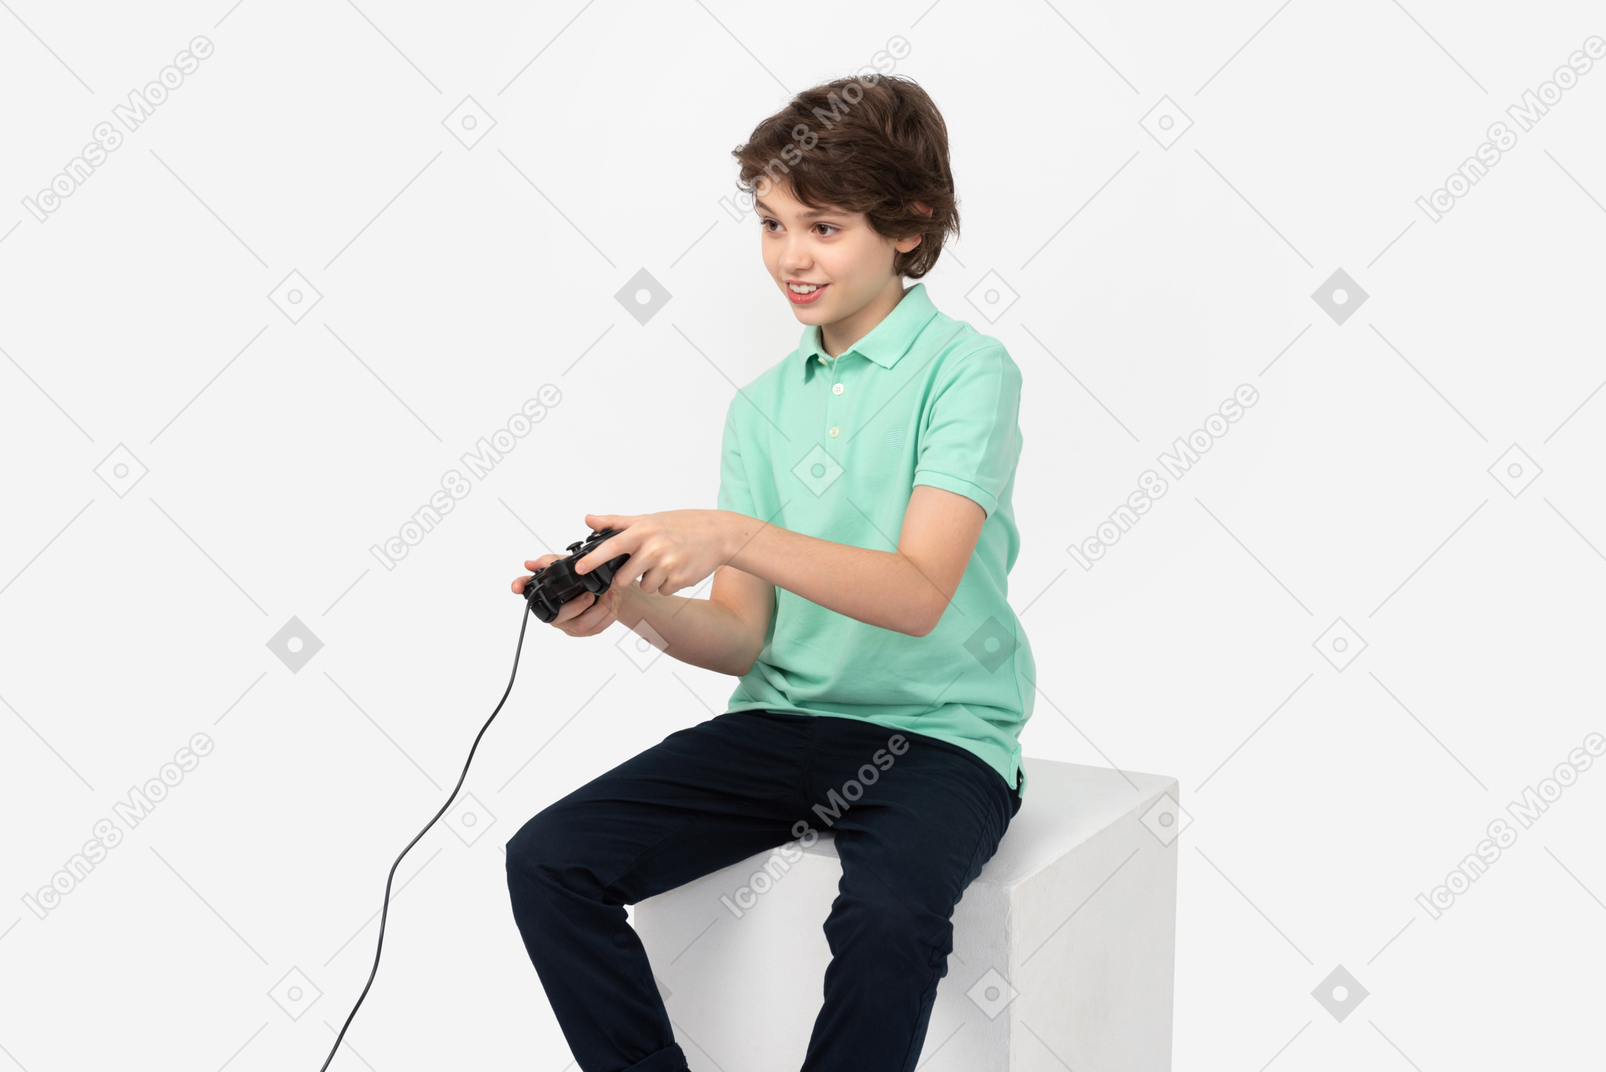 Adolescente jugando videojuegos